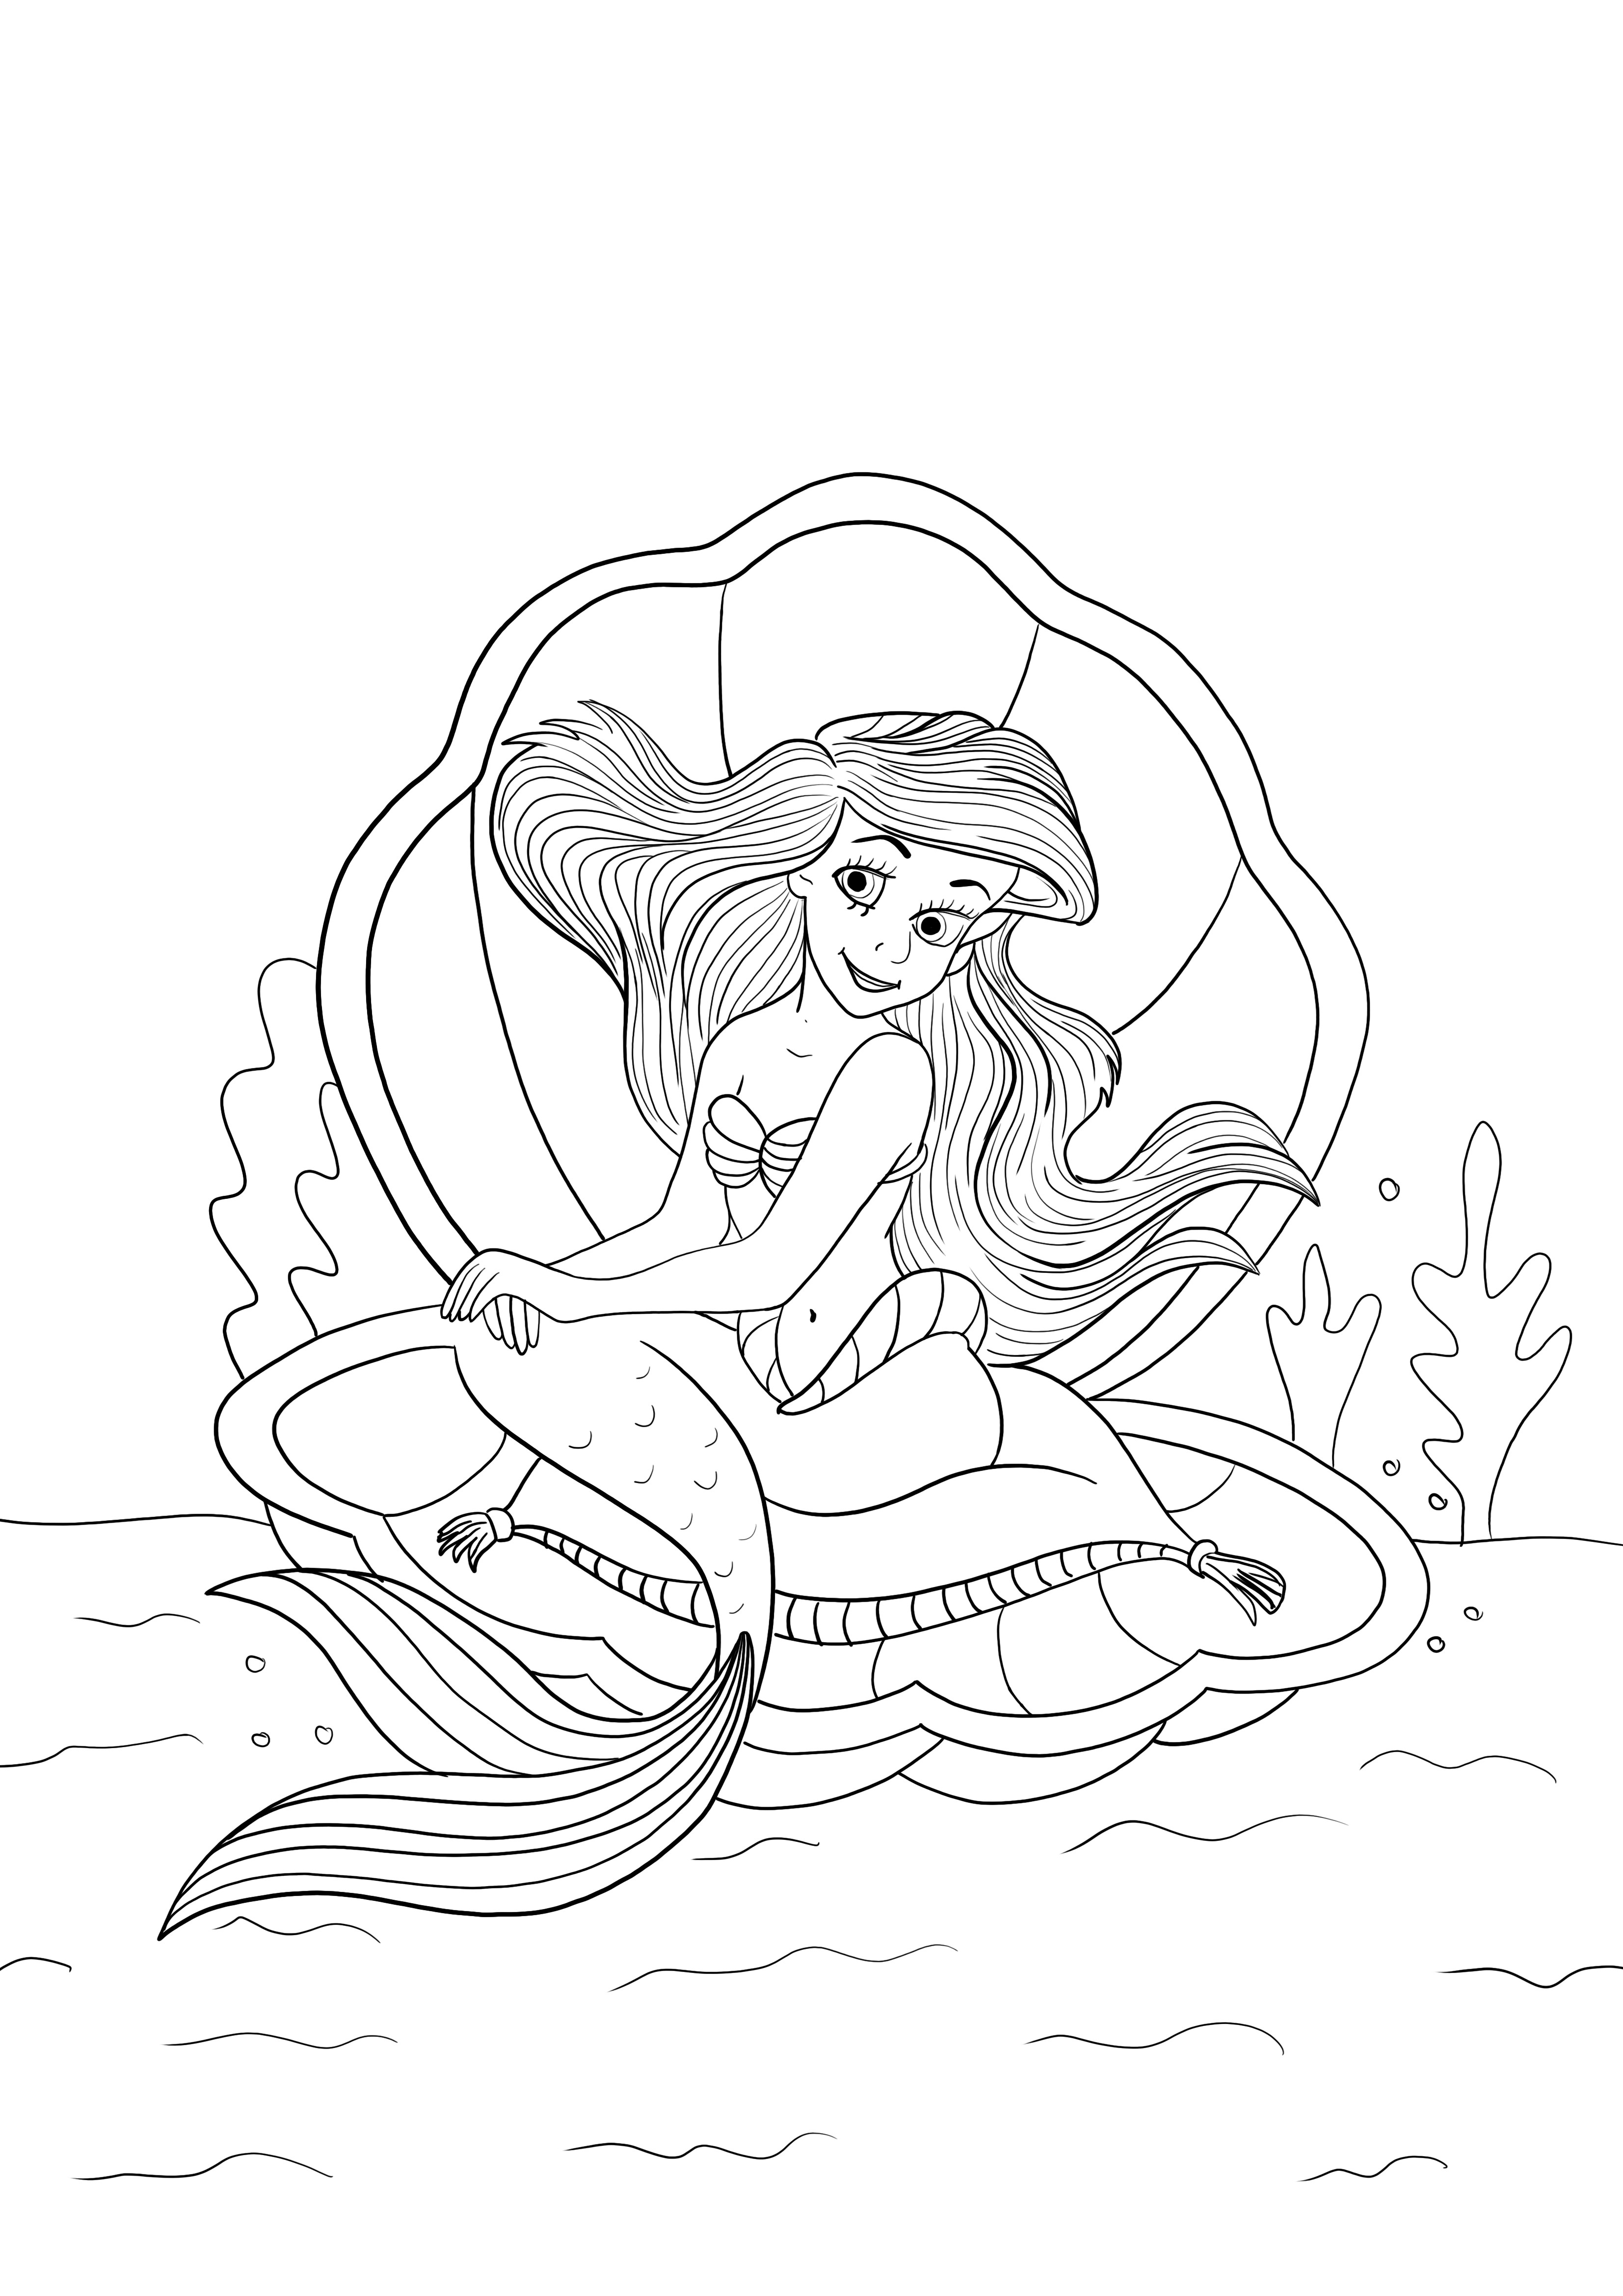 Ariel egy kagylóban ül